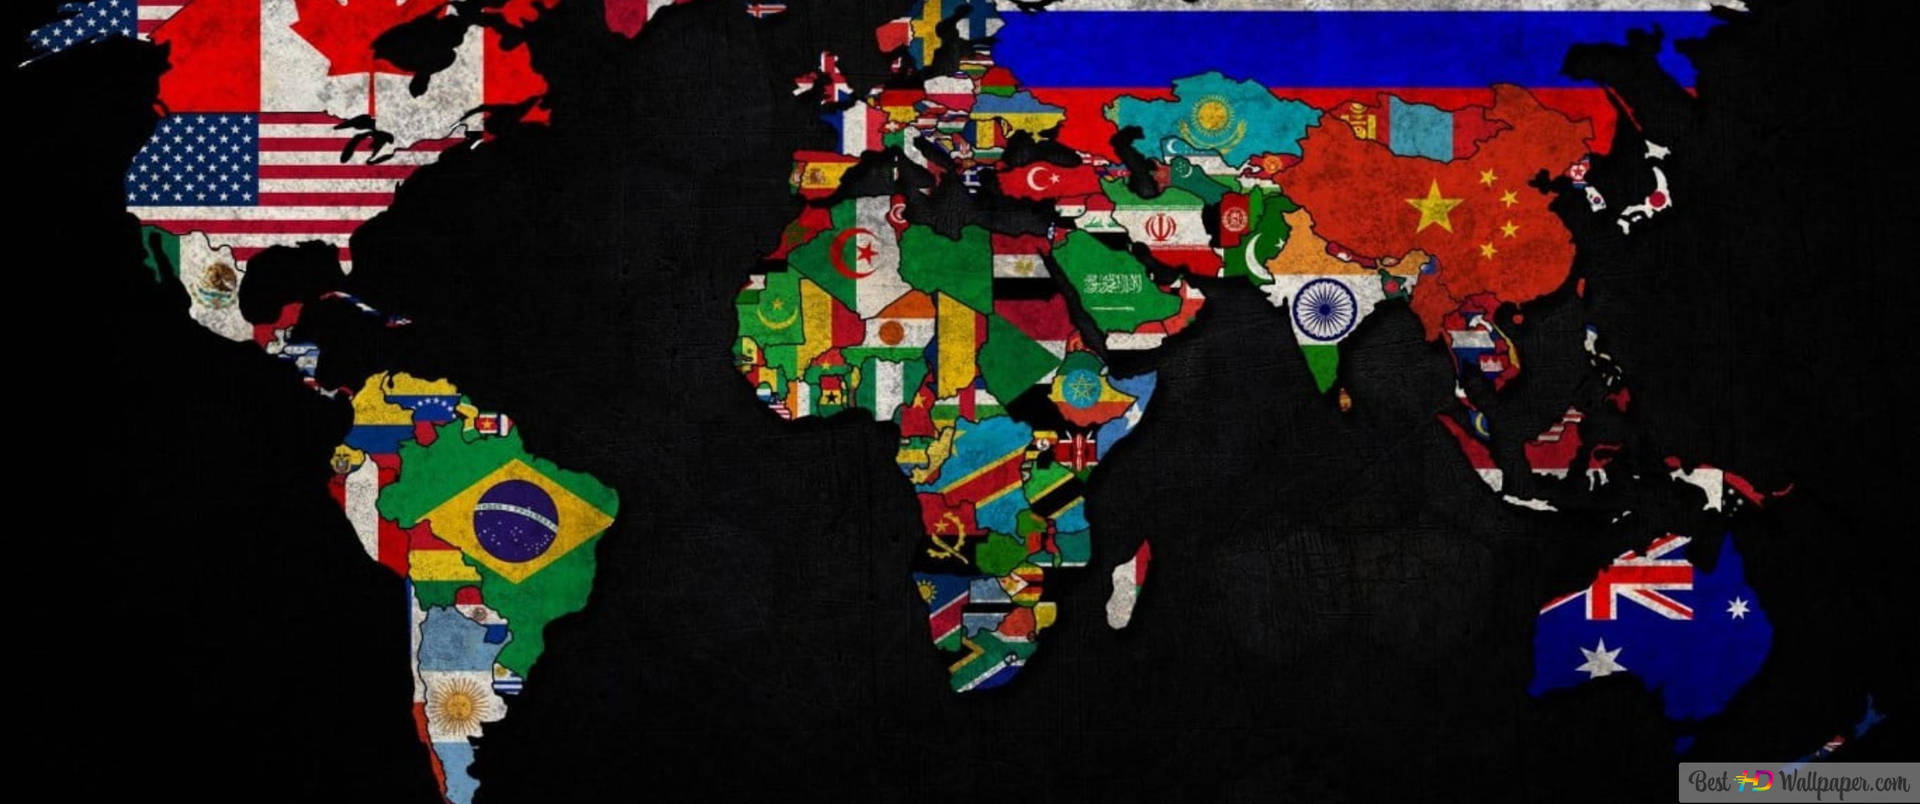 Envärldskarta Med Flaggor På Den. Wallpaper